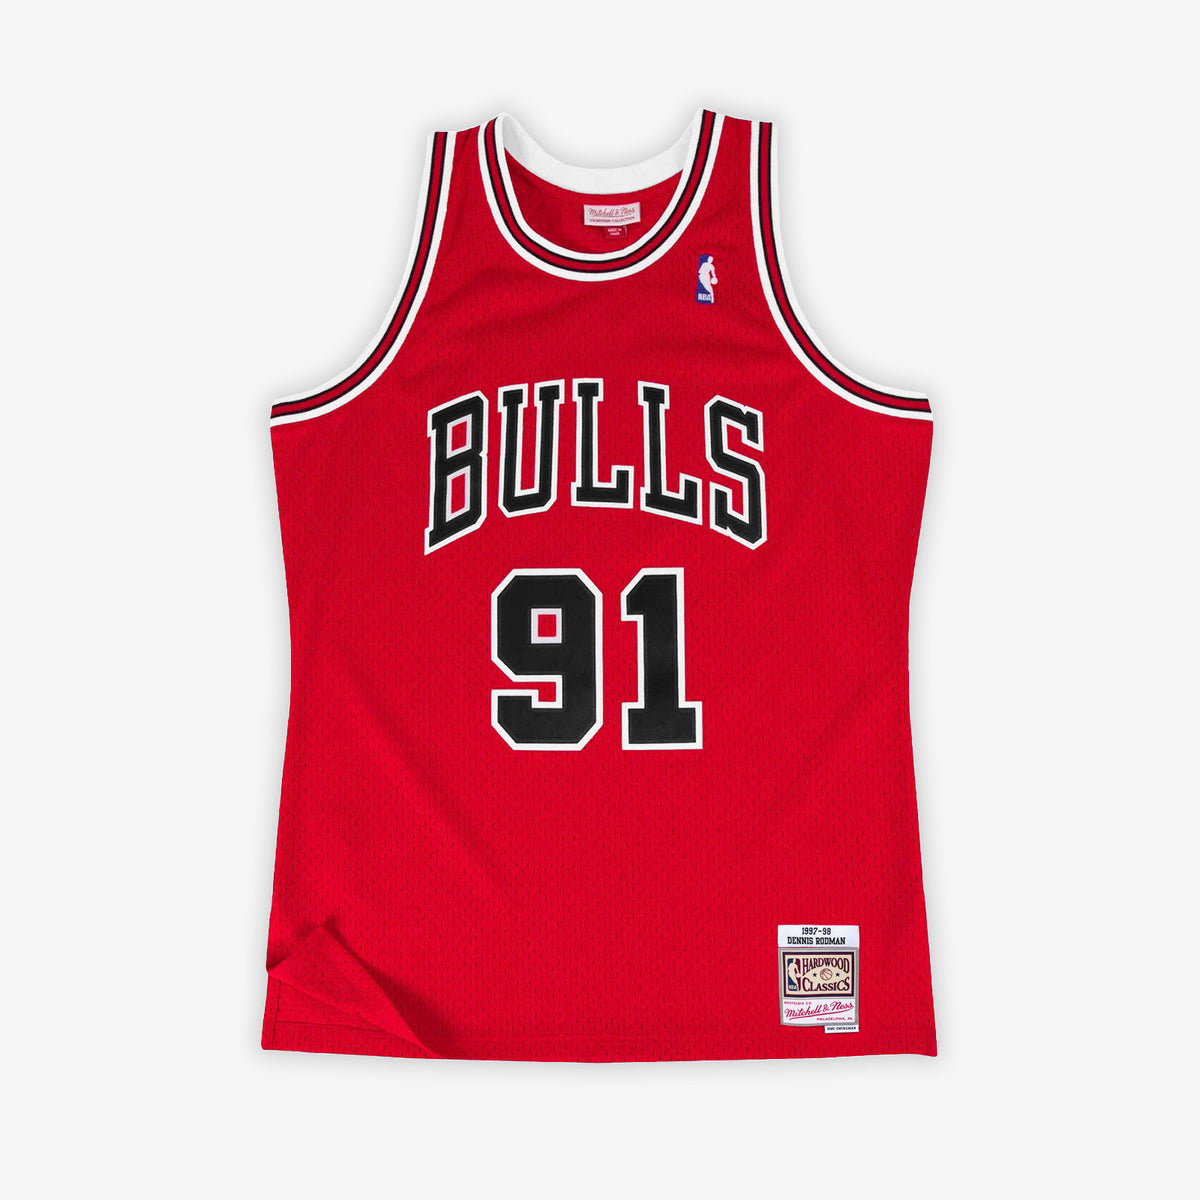 Vtg Steve Kerr Chicago Bulls NBA Champion Jersey Sz Men's 